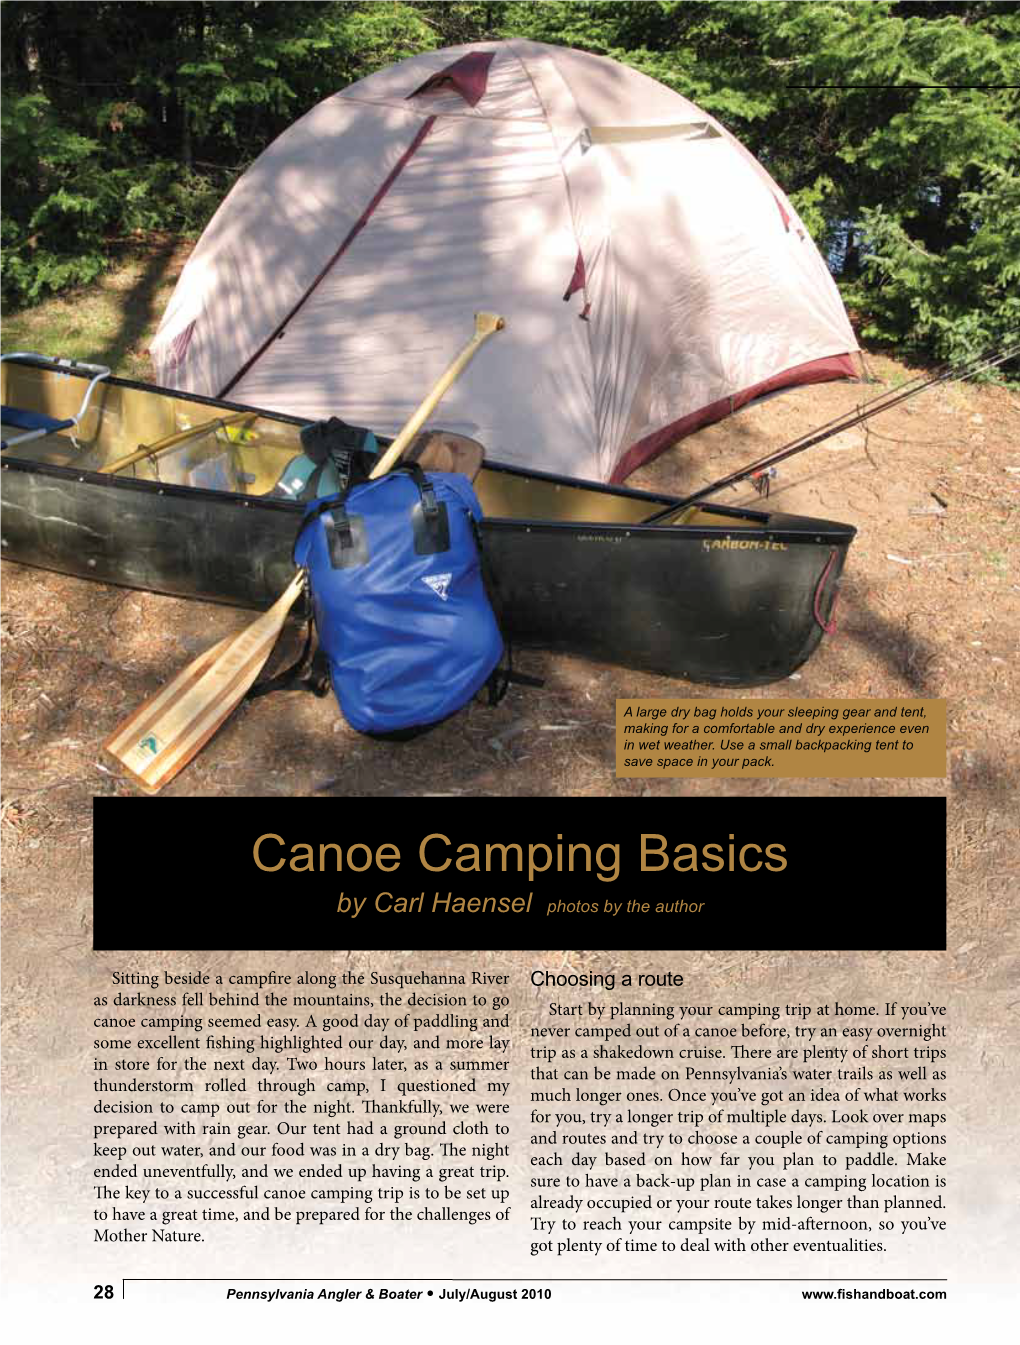 Canoe Camping Basics by Carl Haensel Photos by the Author